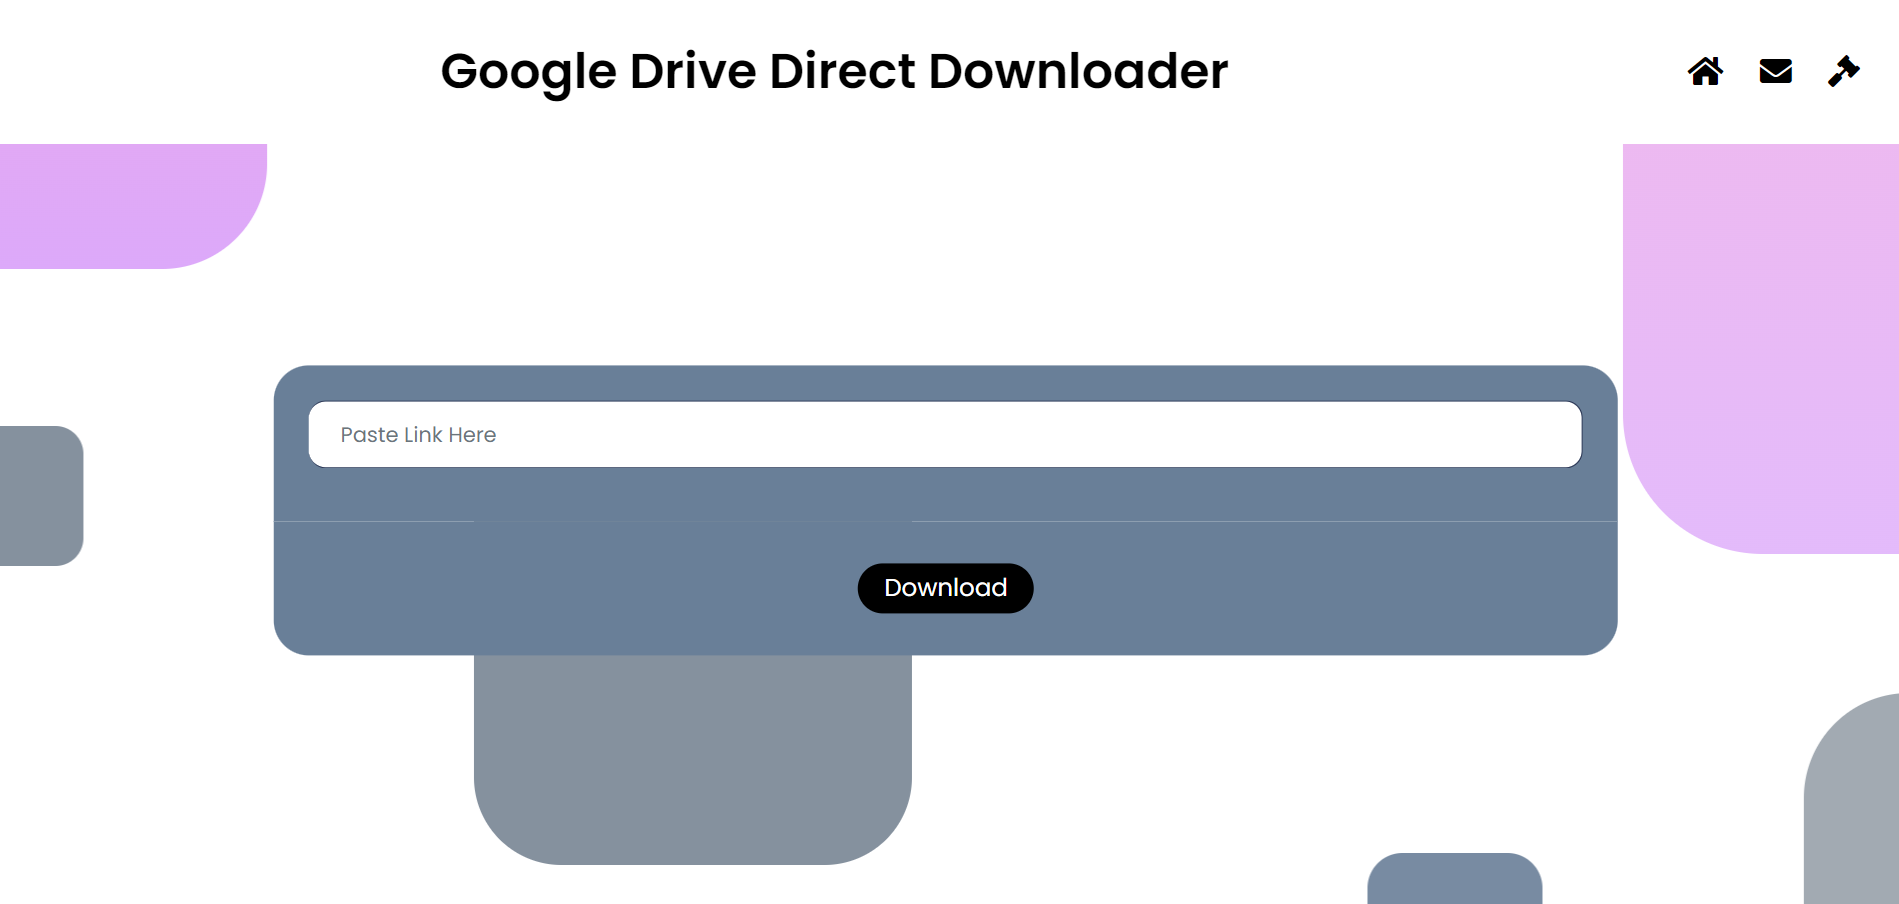 Google Drive Direct Downloader